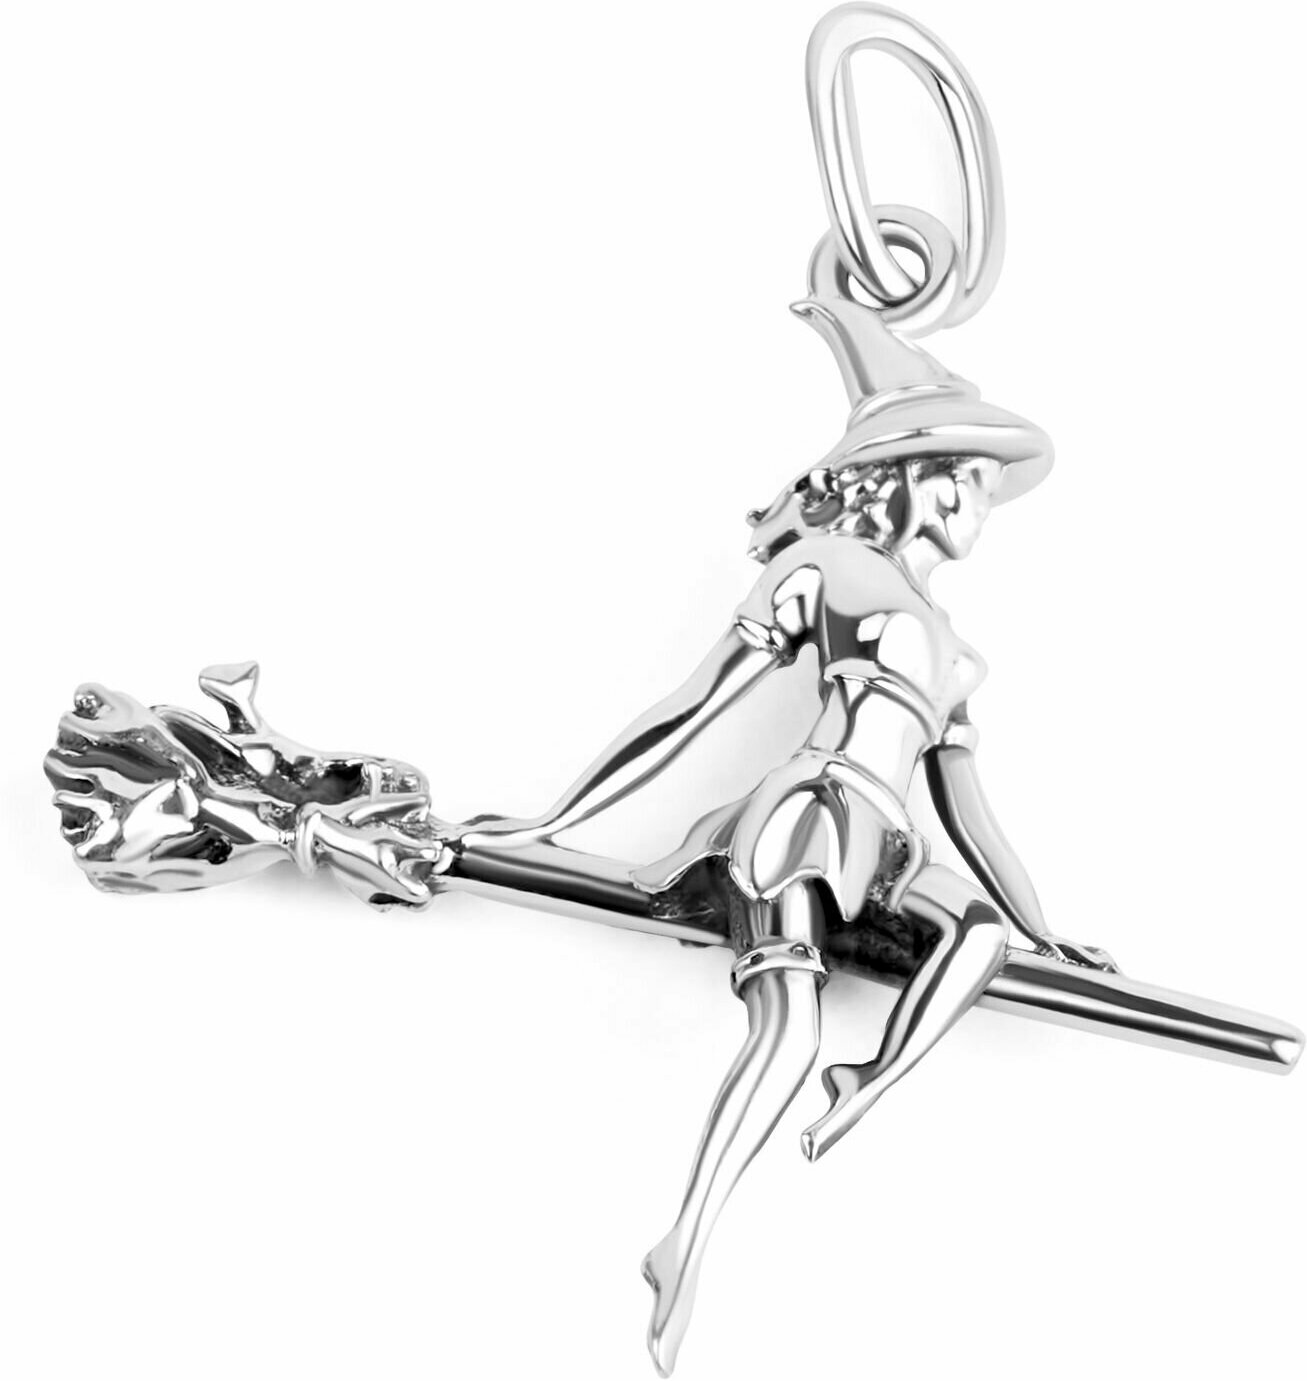 Подвеска женская Sirius-Jewelry подвеска на шею подвеска ведьма подарок для девушки